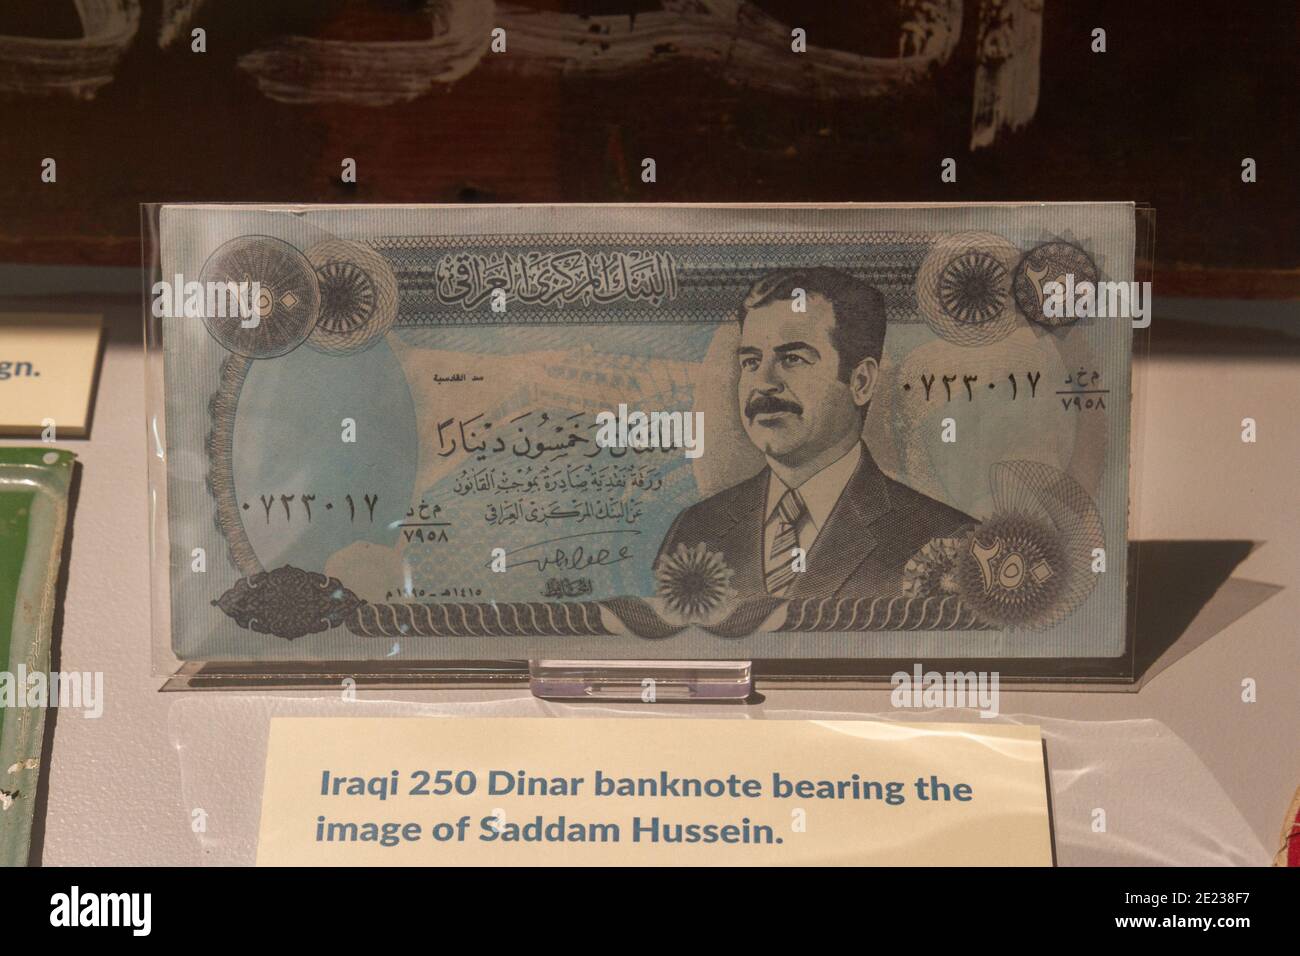 Una banconota da 250 dinari irachena con l'immagine di Saddam Hussein in mostra al Museo dell'aviazione militare di Stockbridge, Hampshire, Regno Unito. Foto Stock